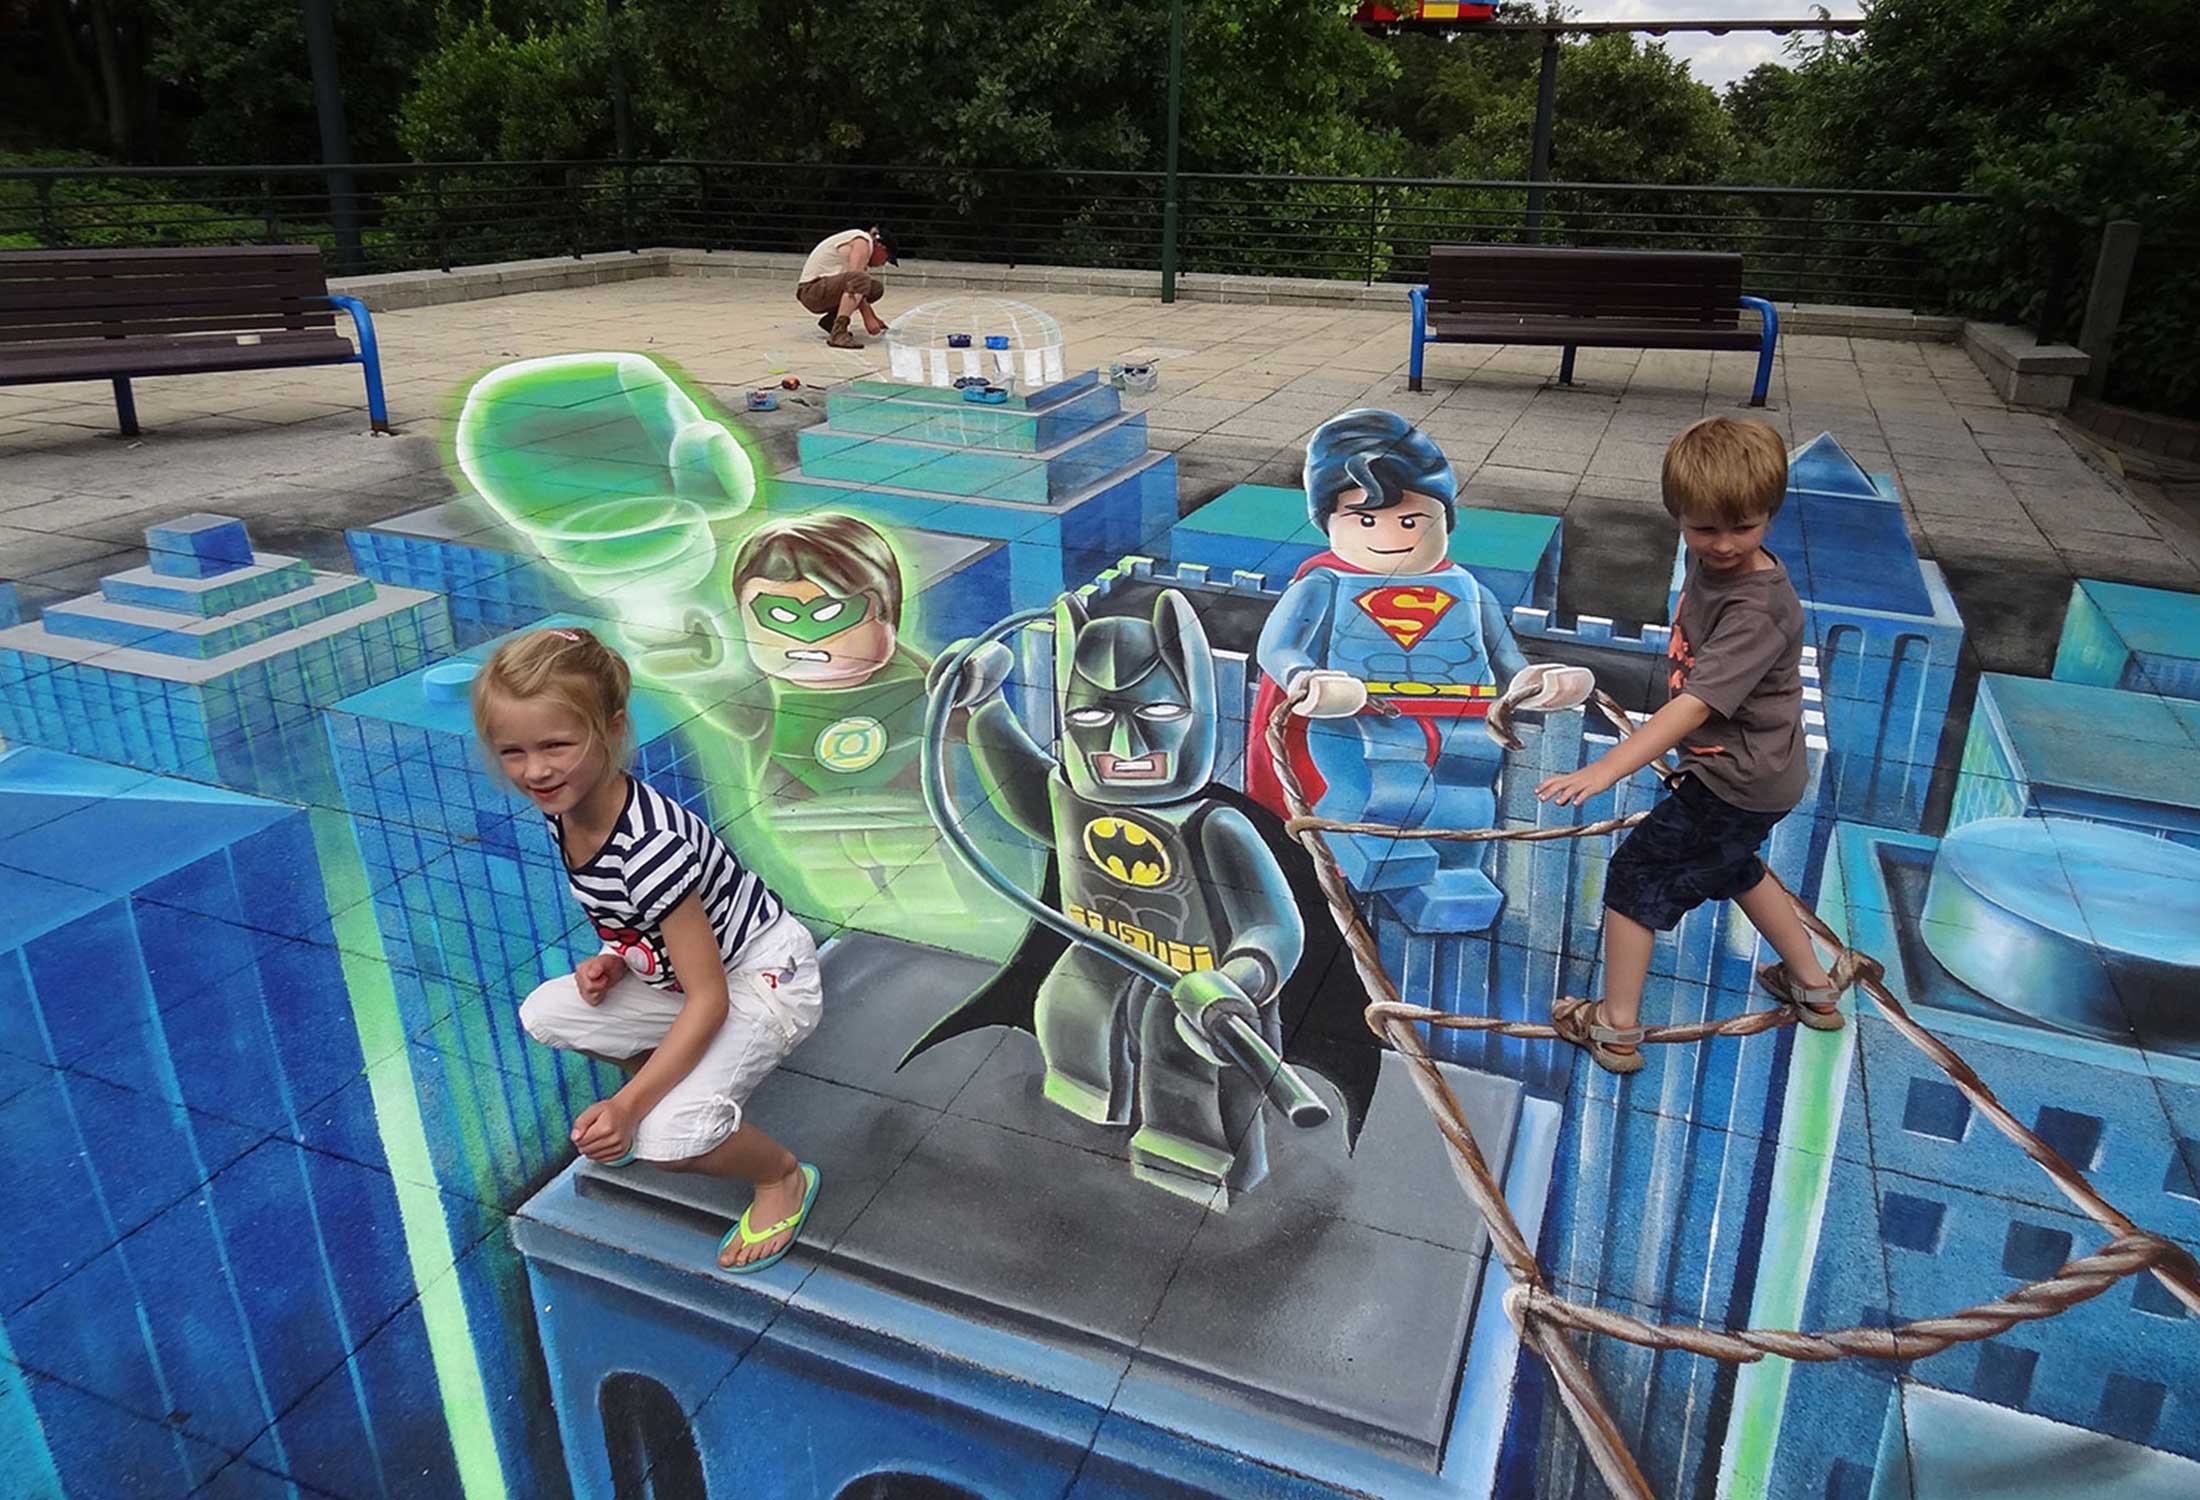 3D urban art by Leon Keer featuring Lego Batman, Lego Superman, and Lego Green Lantern